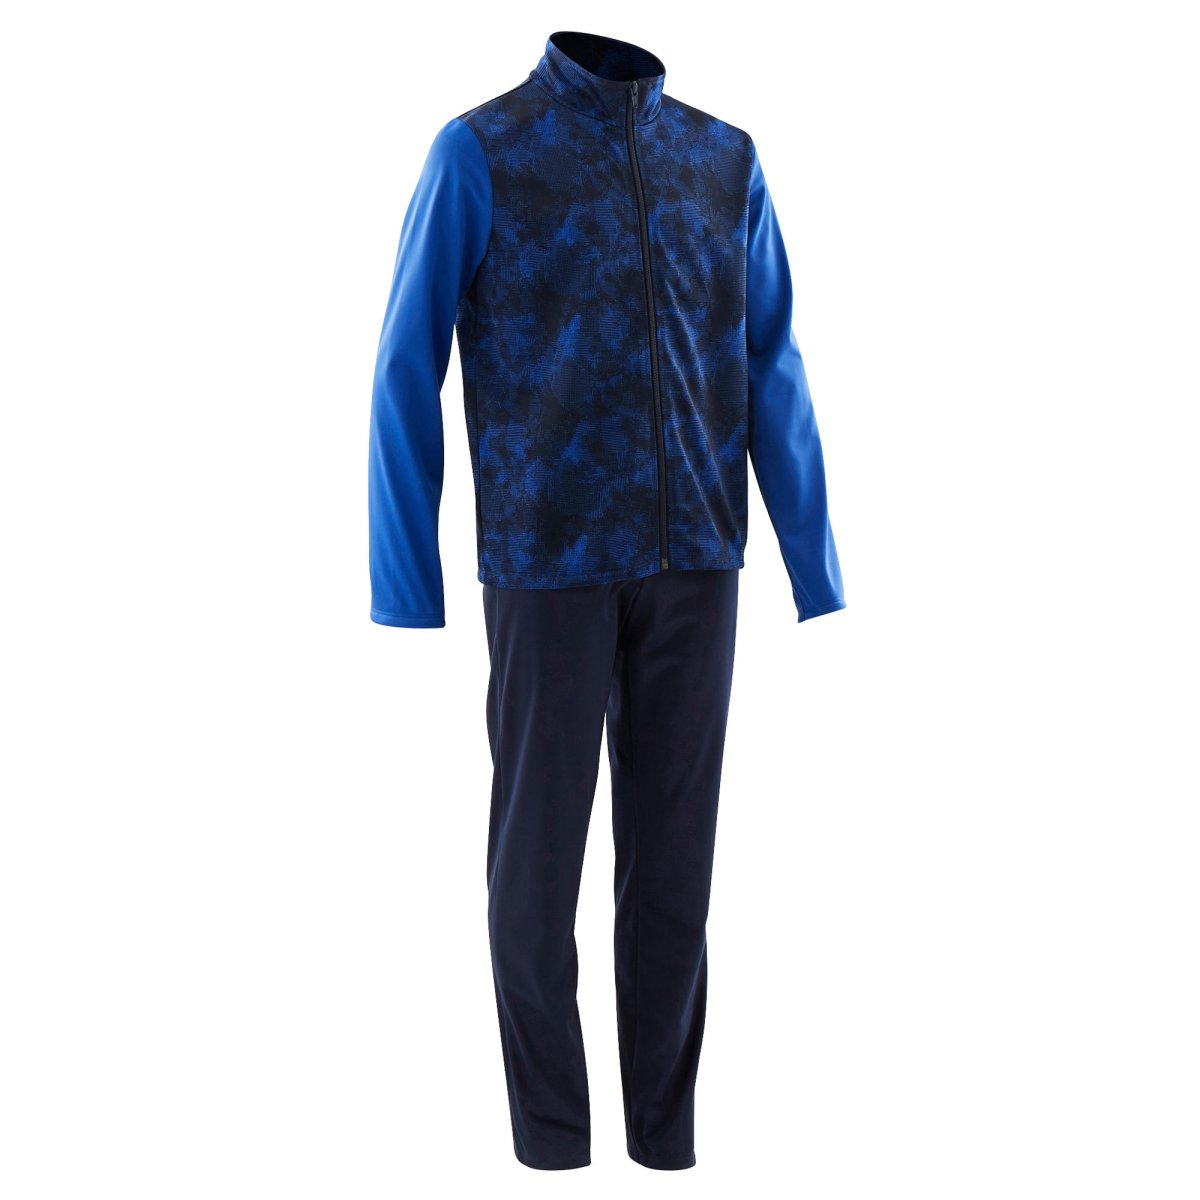 Спортивный костюм Gym'y s500 Gym утепленный для мальчиков сине-черный Domyos